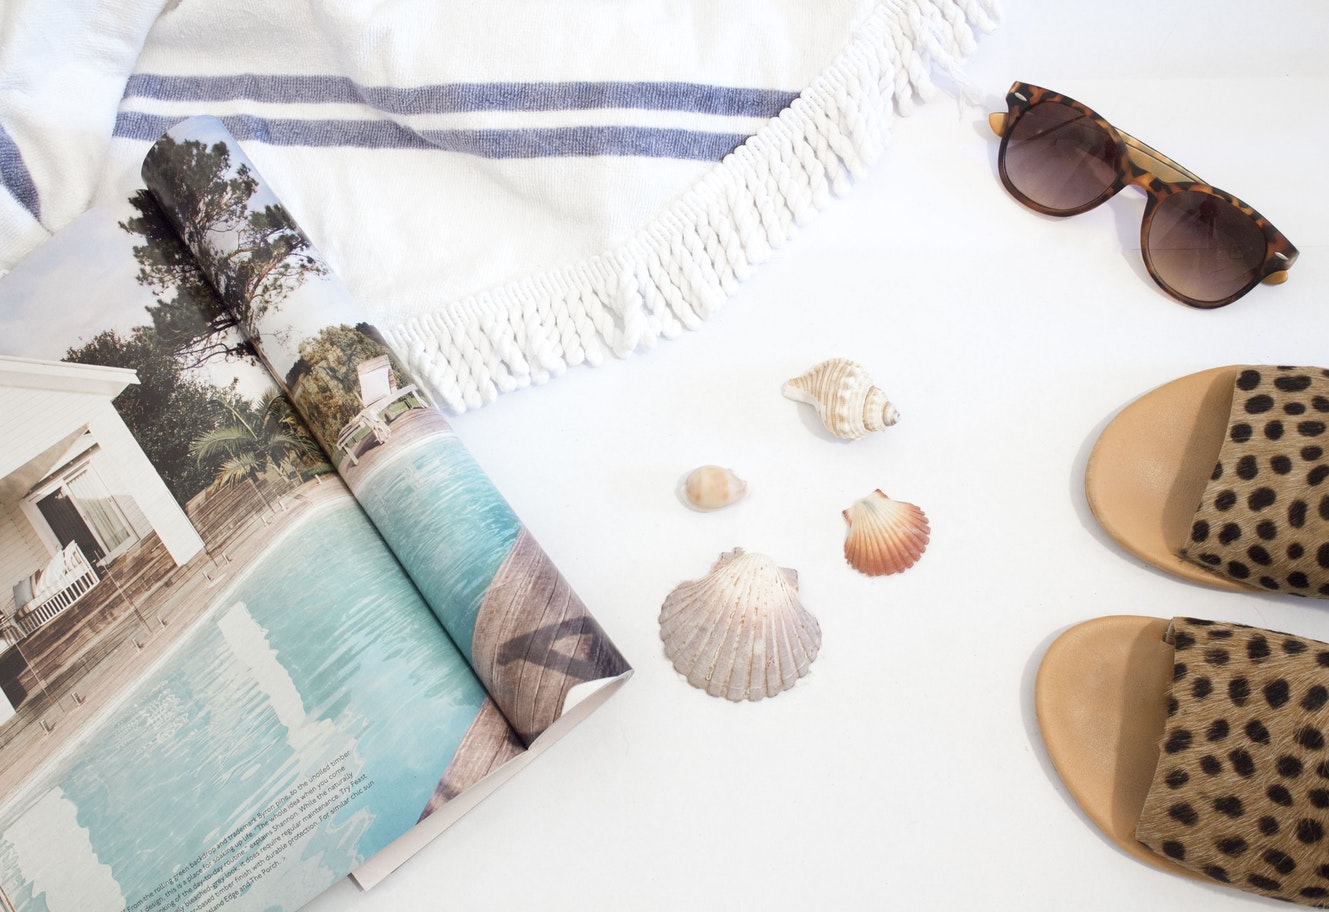 Beach essentials including a towel, sunglasses and magazine